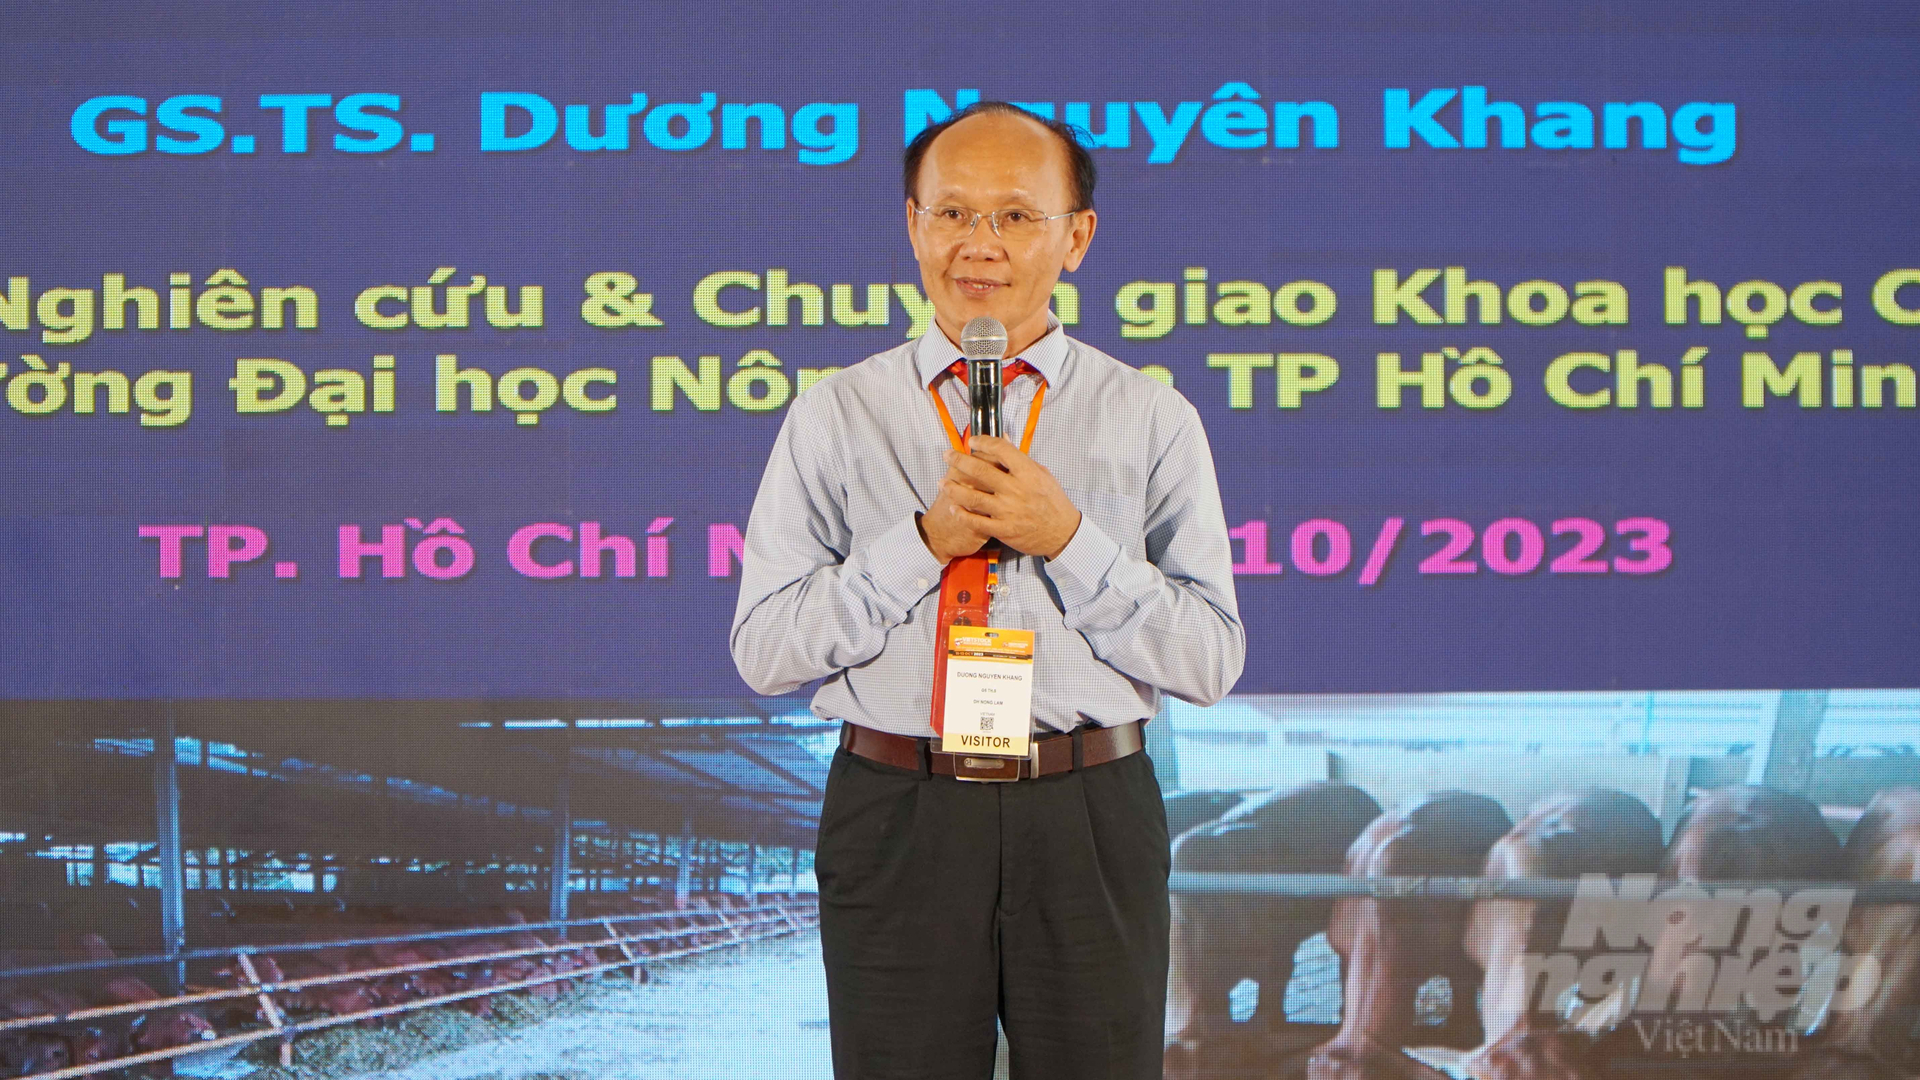 GS.TS Dương Nguyên Khang: 'Kháng sinh và vacxin không phải là thanh bảo kiếm mà an toàn sinh học đặt lên hàng đầu'. Ảnh: Lê Bình.